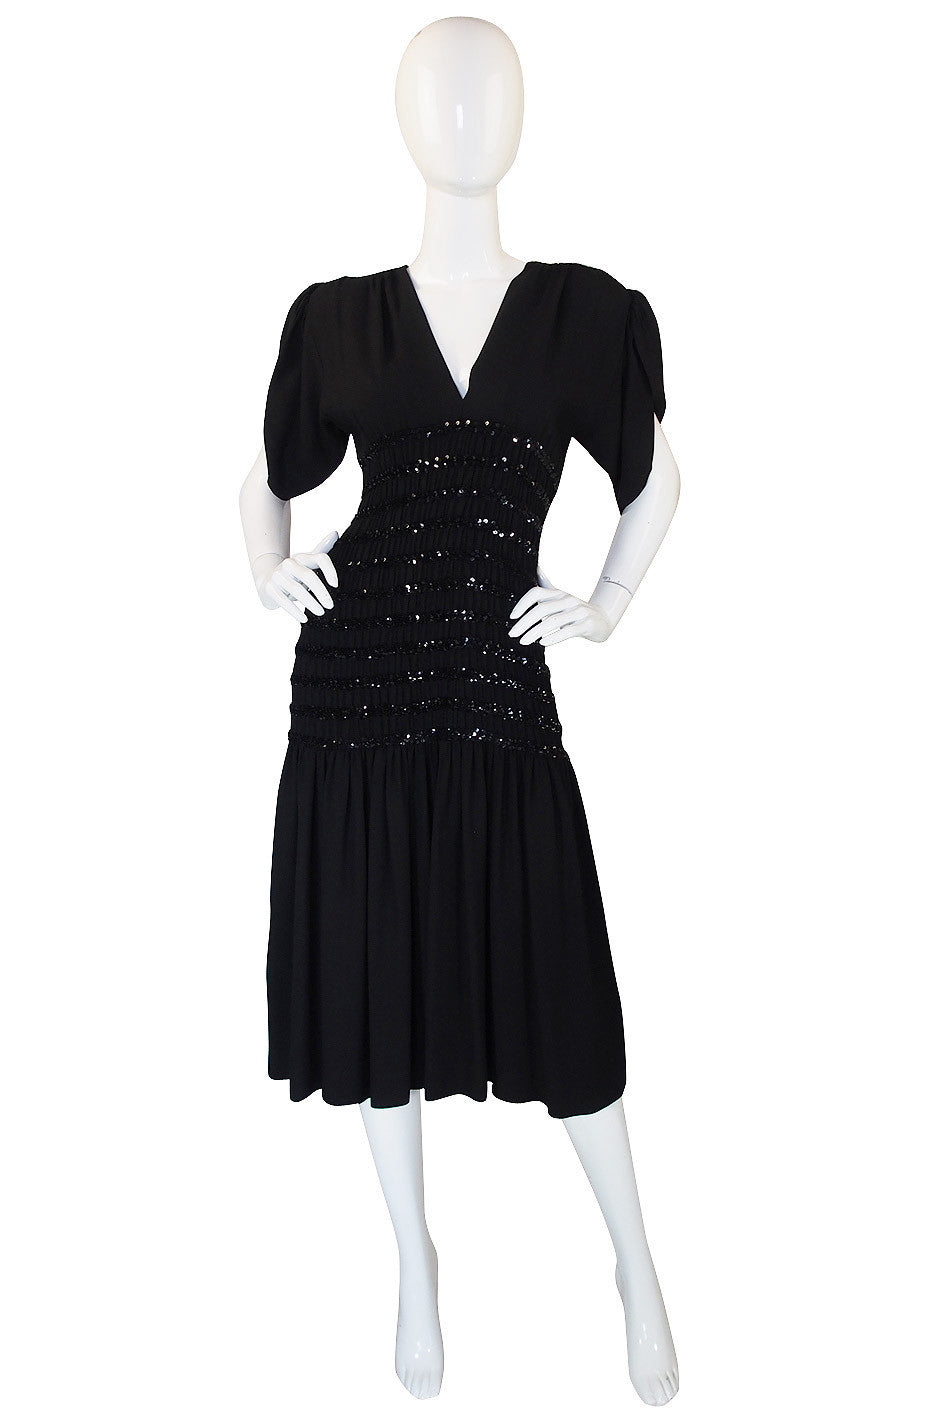 1983 Yves Saint Laurent Crepe & Sequin Dress – Shrimpton Couture